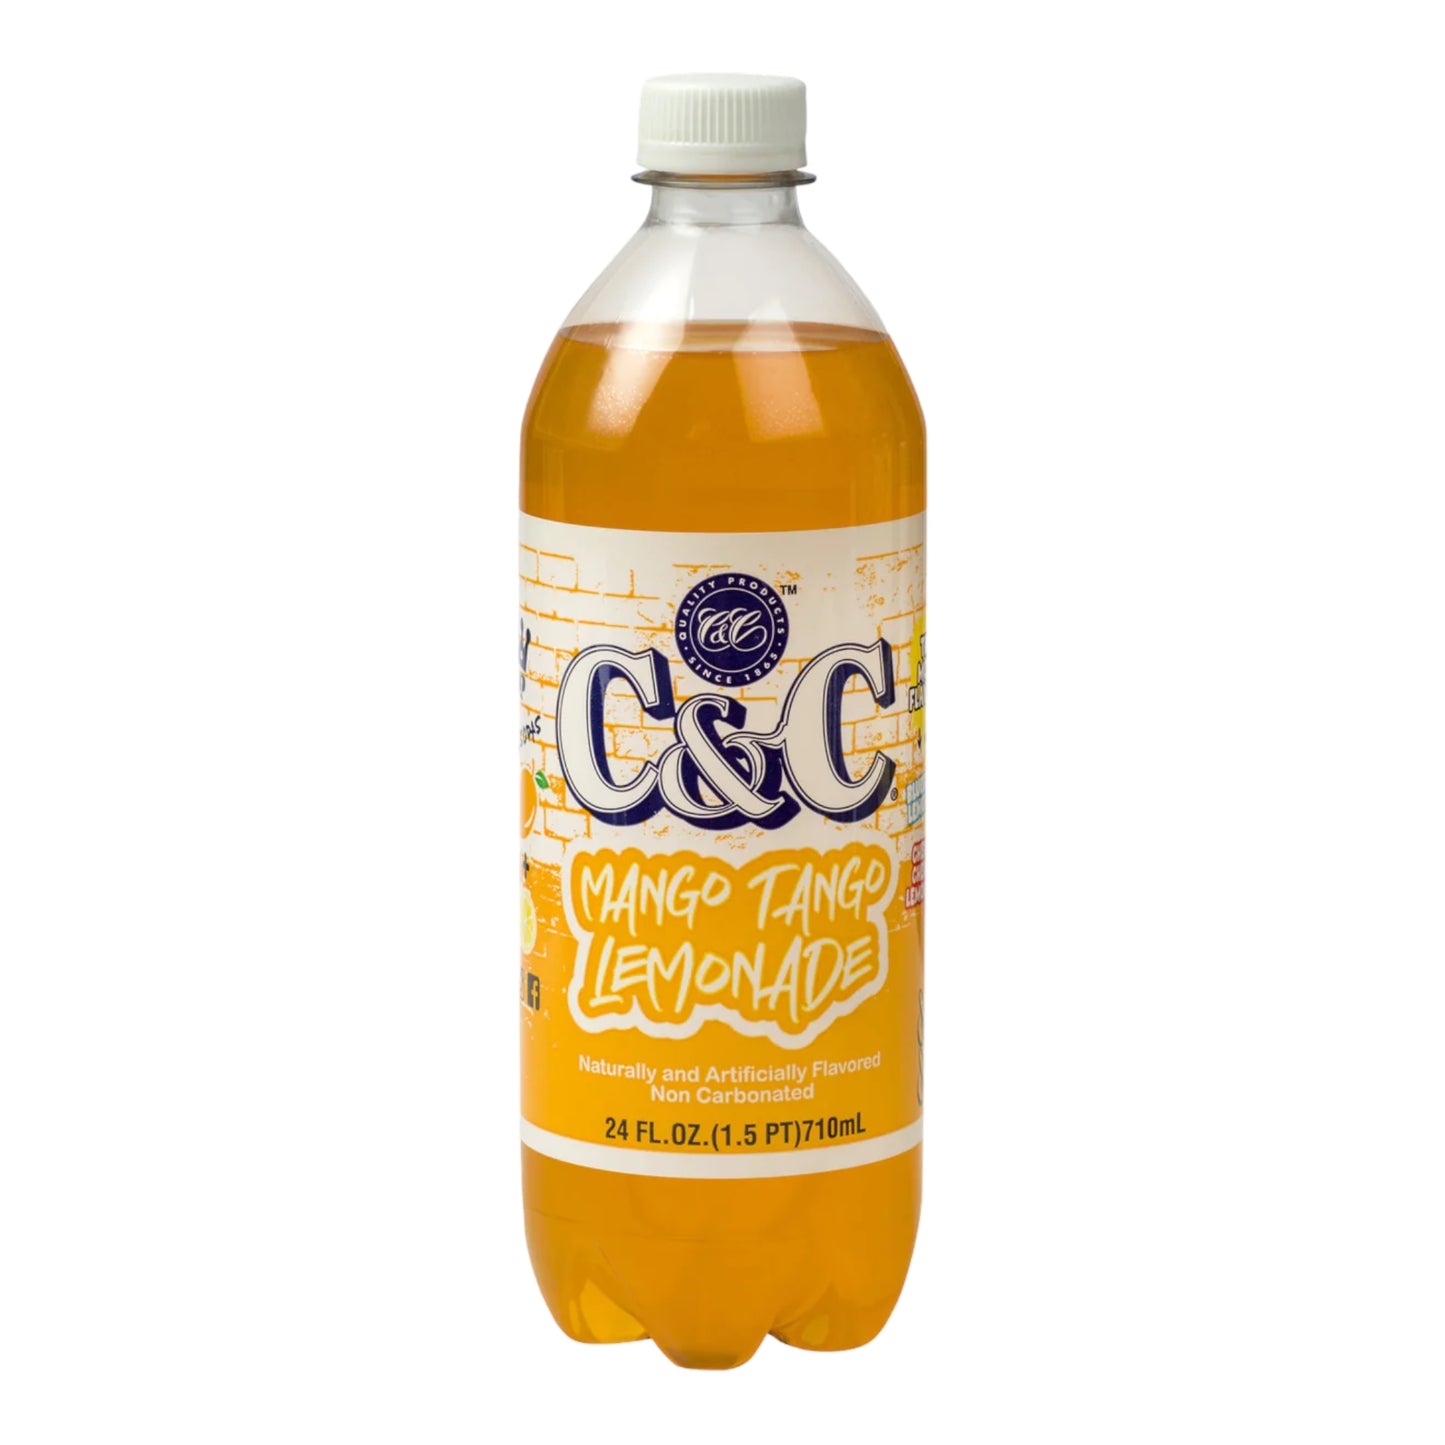 C&C Soda Mango Tango Lemonade Bottle 24 fl oz (710ml)